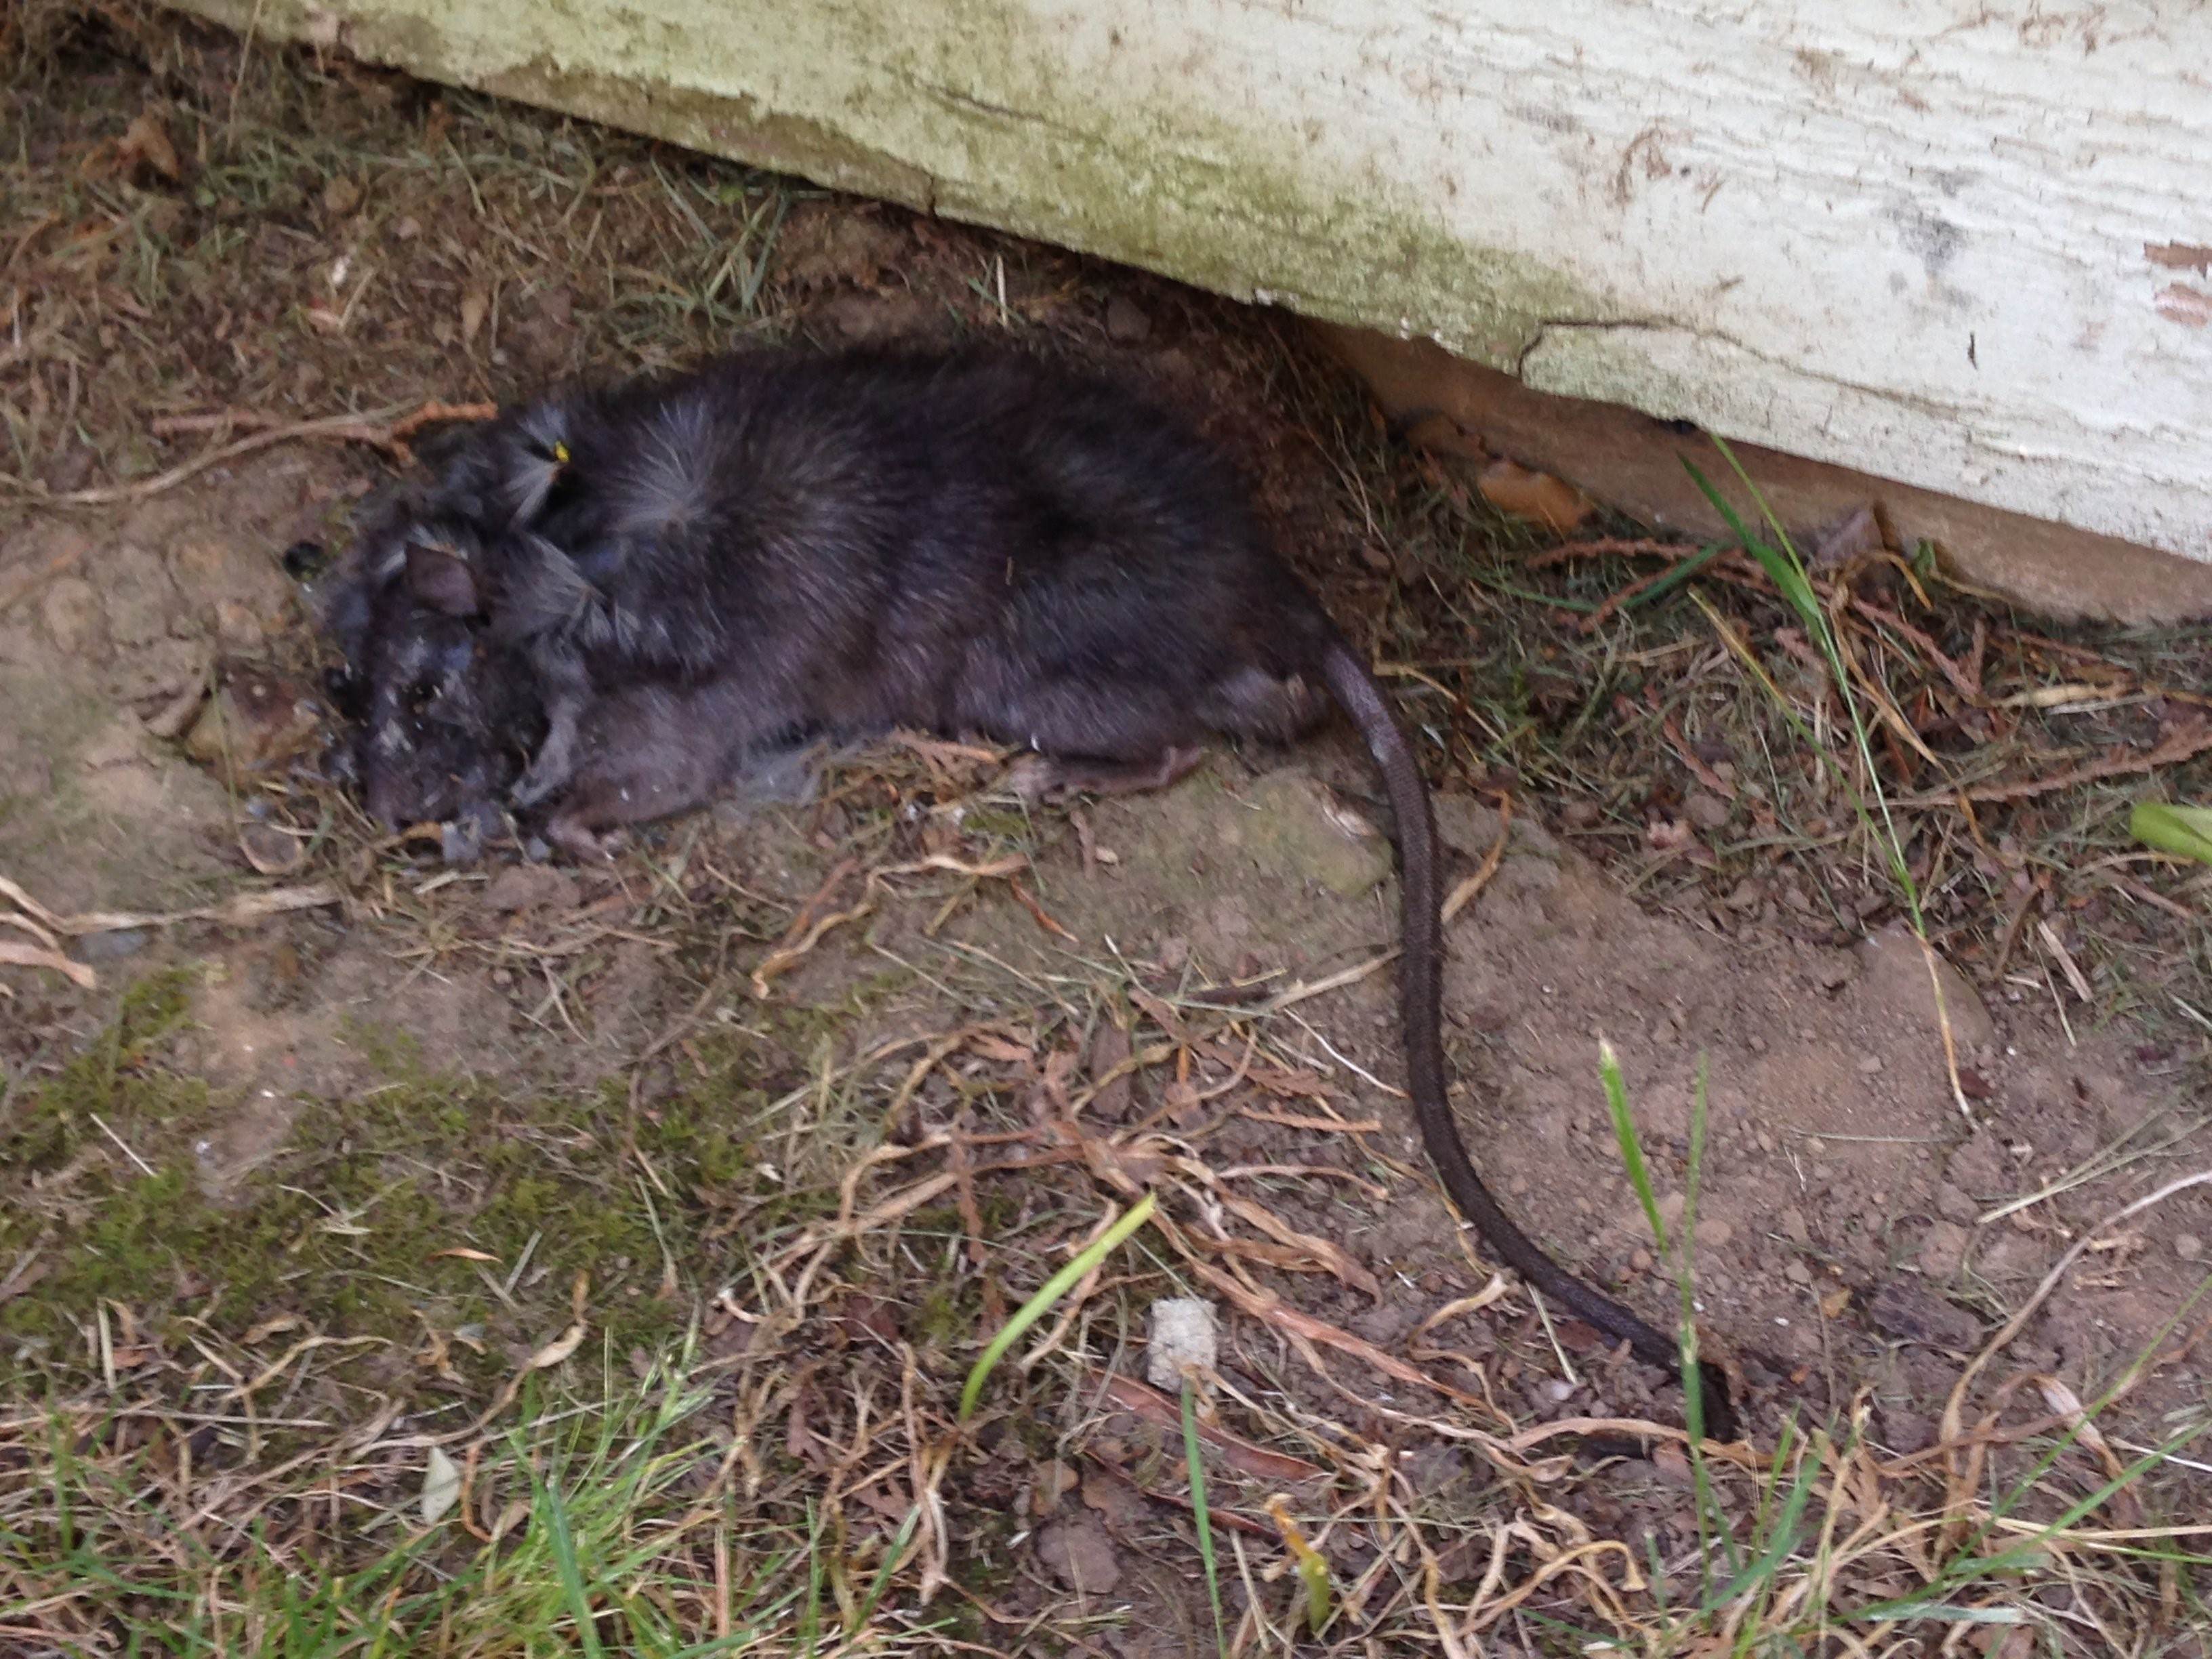 Земляные крысы в огороде фото